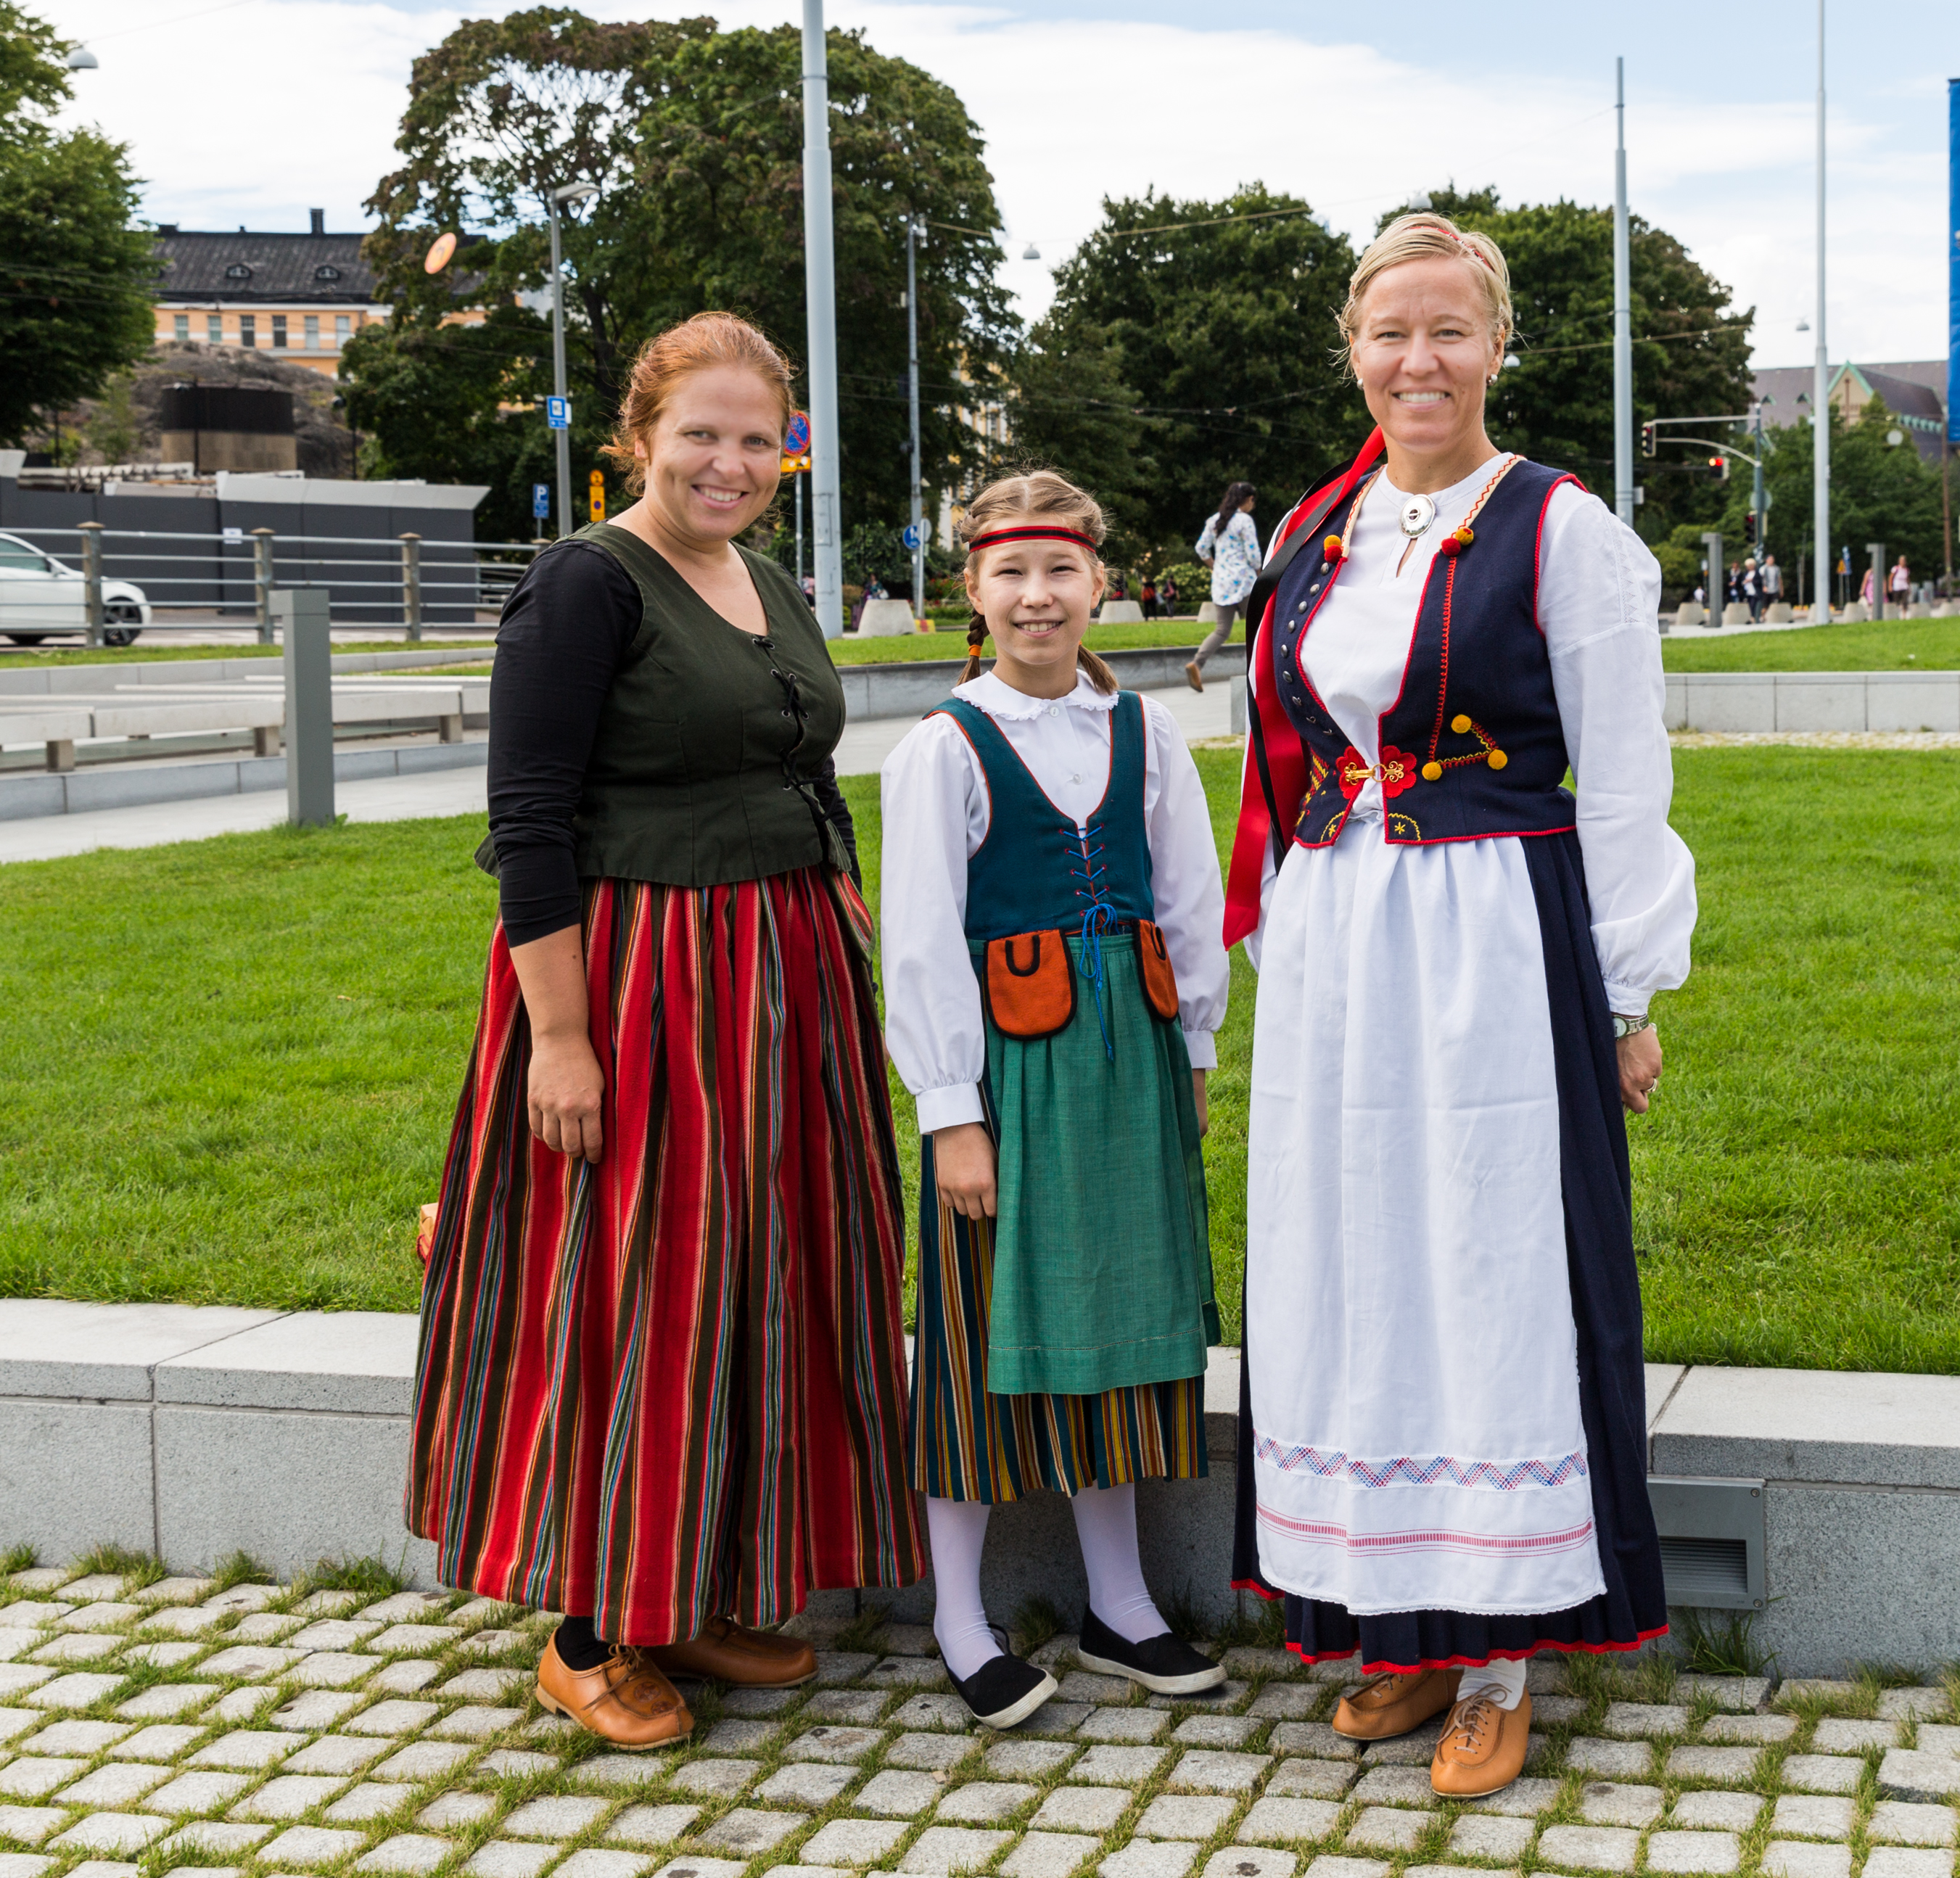 Финны в национальных костюмах